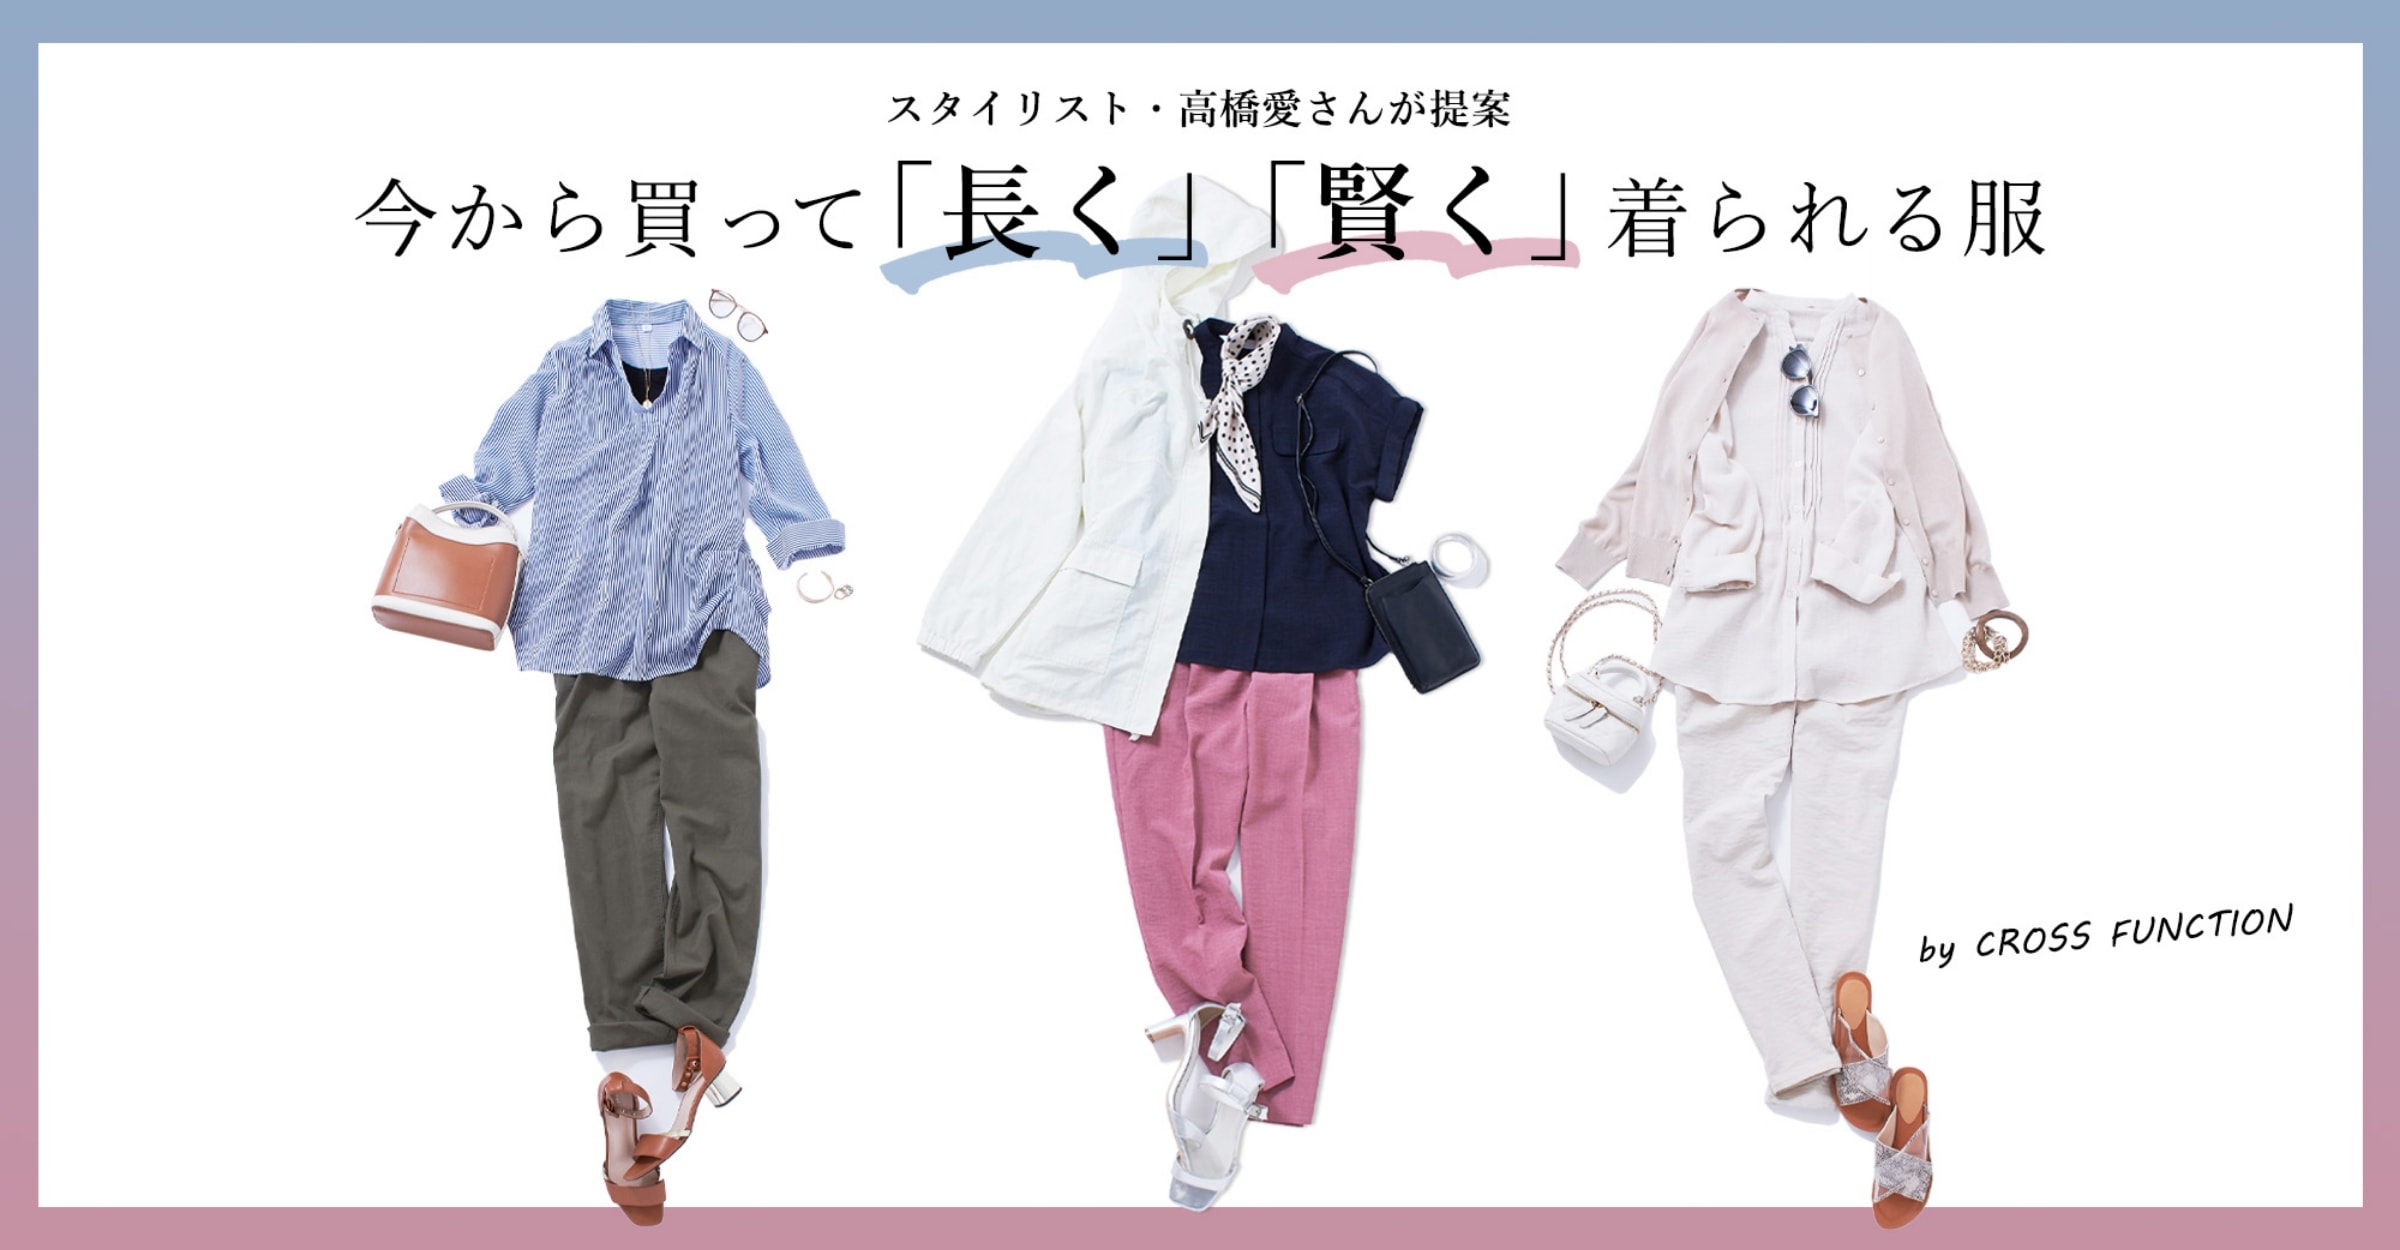 スタイリスト・高橋愛さんが提案 今から買って「長く」「賢く」着られる服